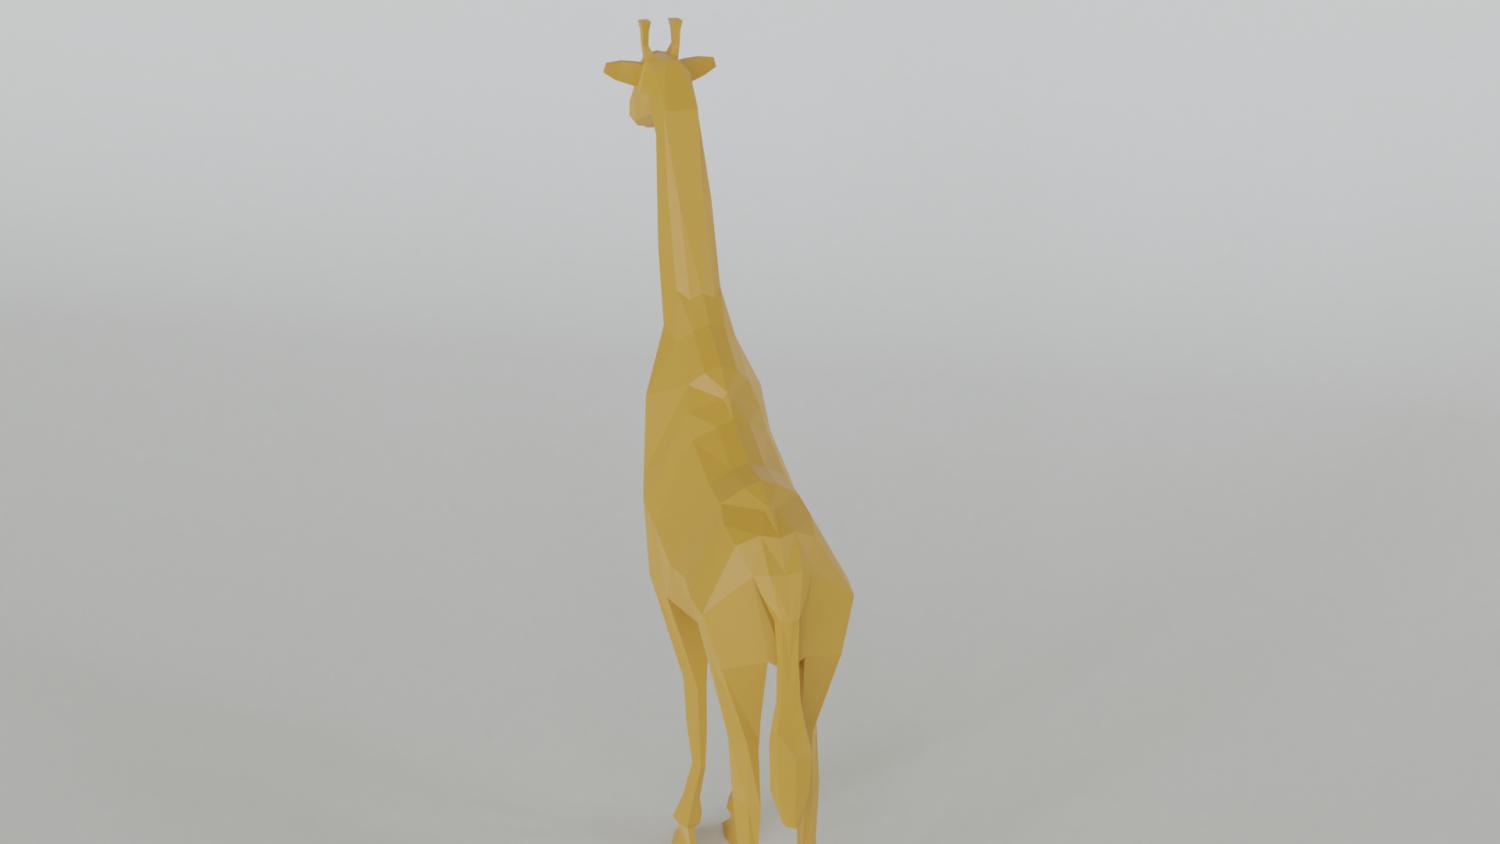 low poly giraffe Free 3D Model in Wildlife 3DExport